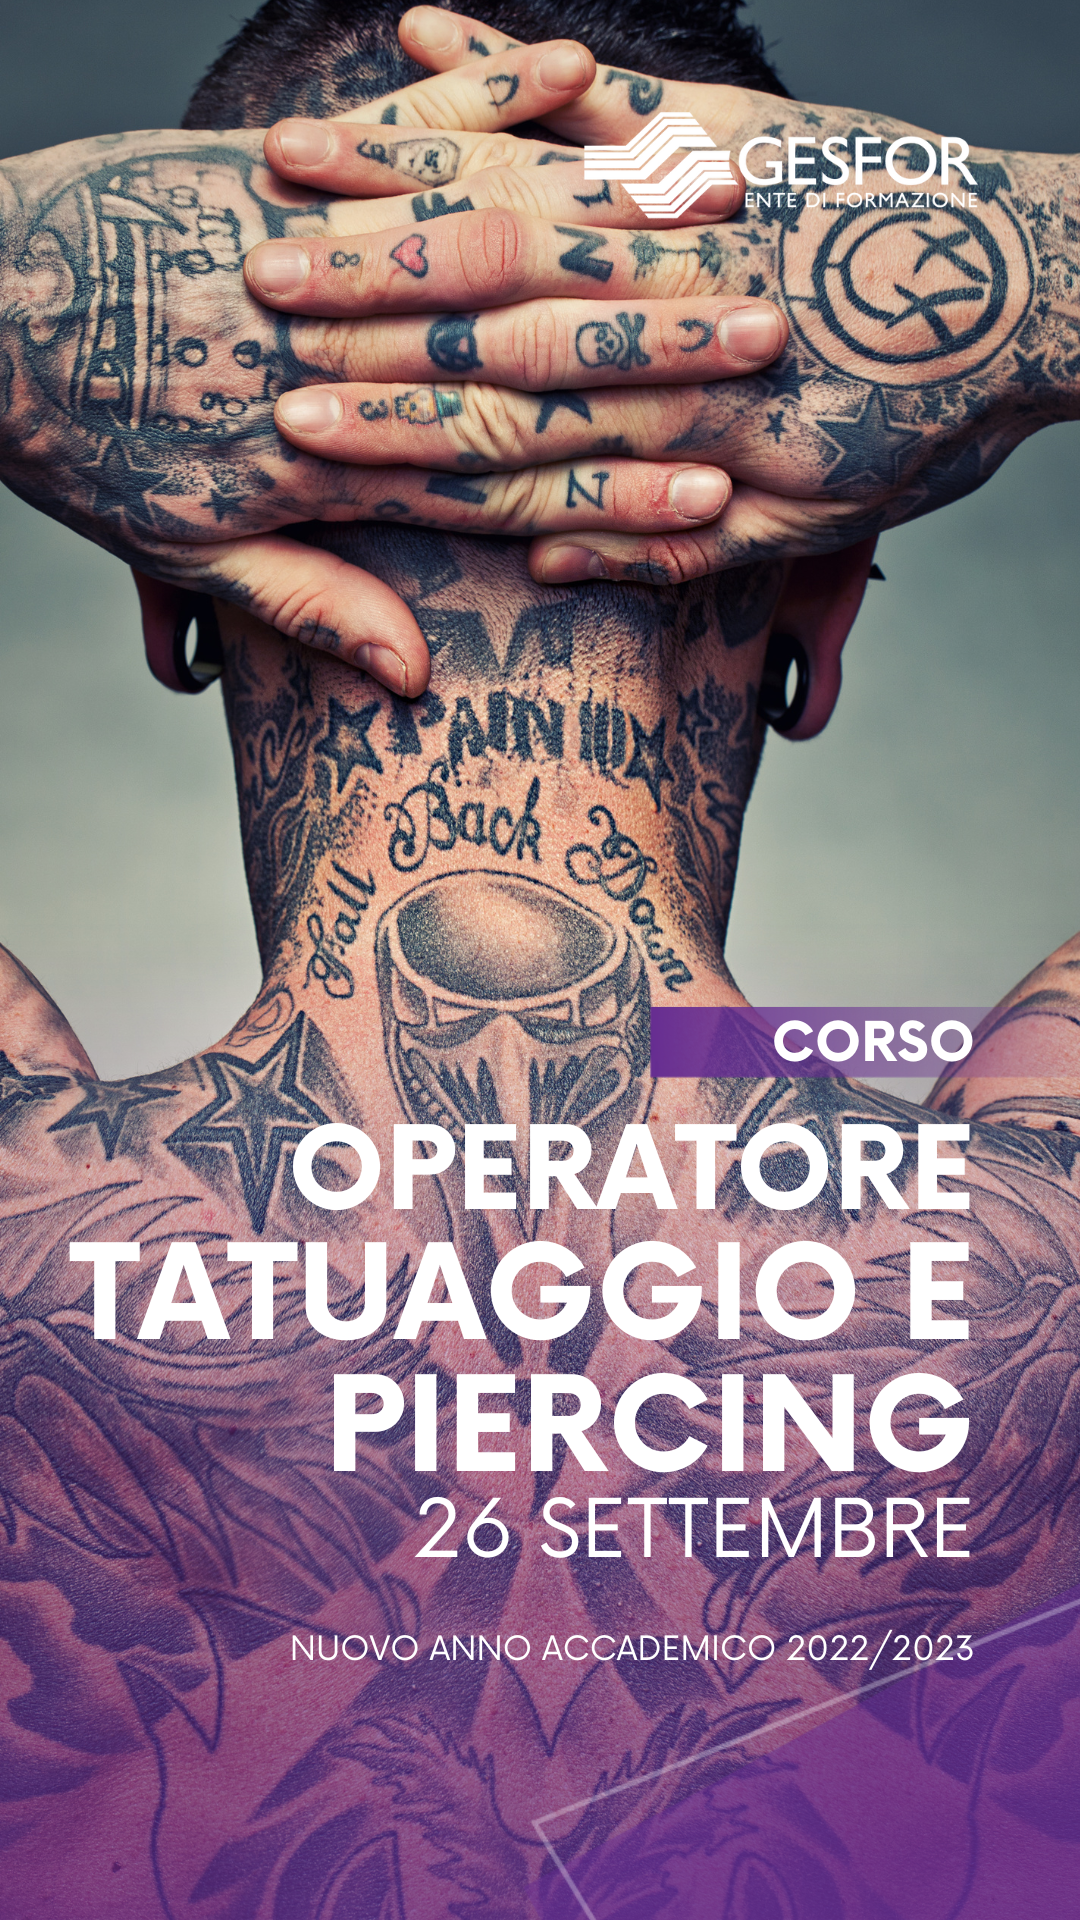 CORSO OPERATORE TATUAGGIO & PIERCING